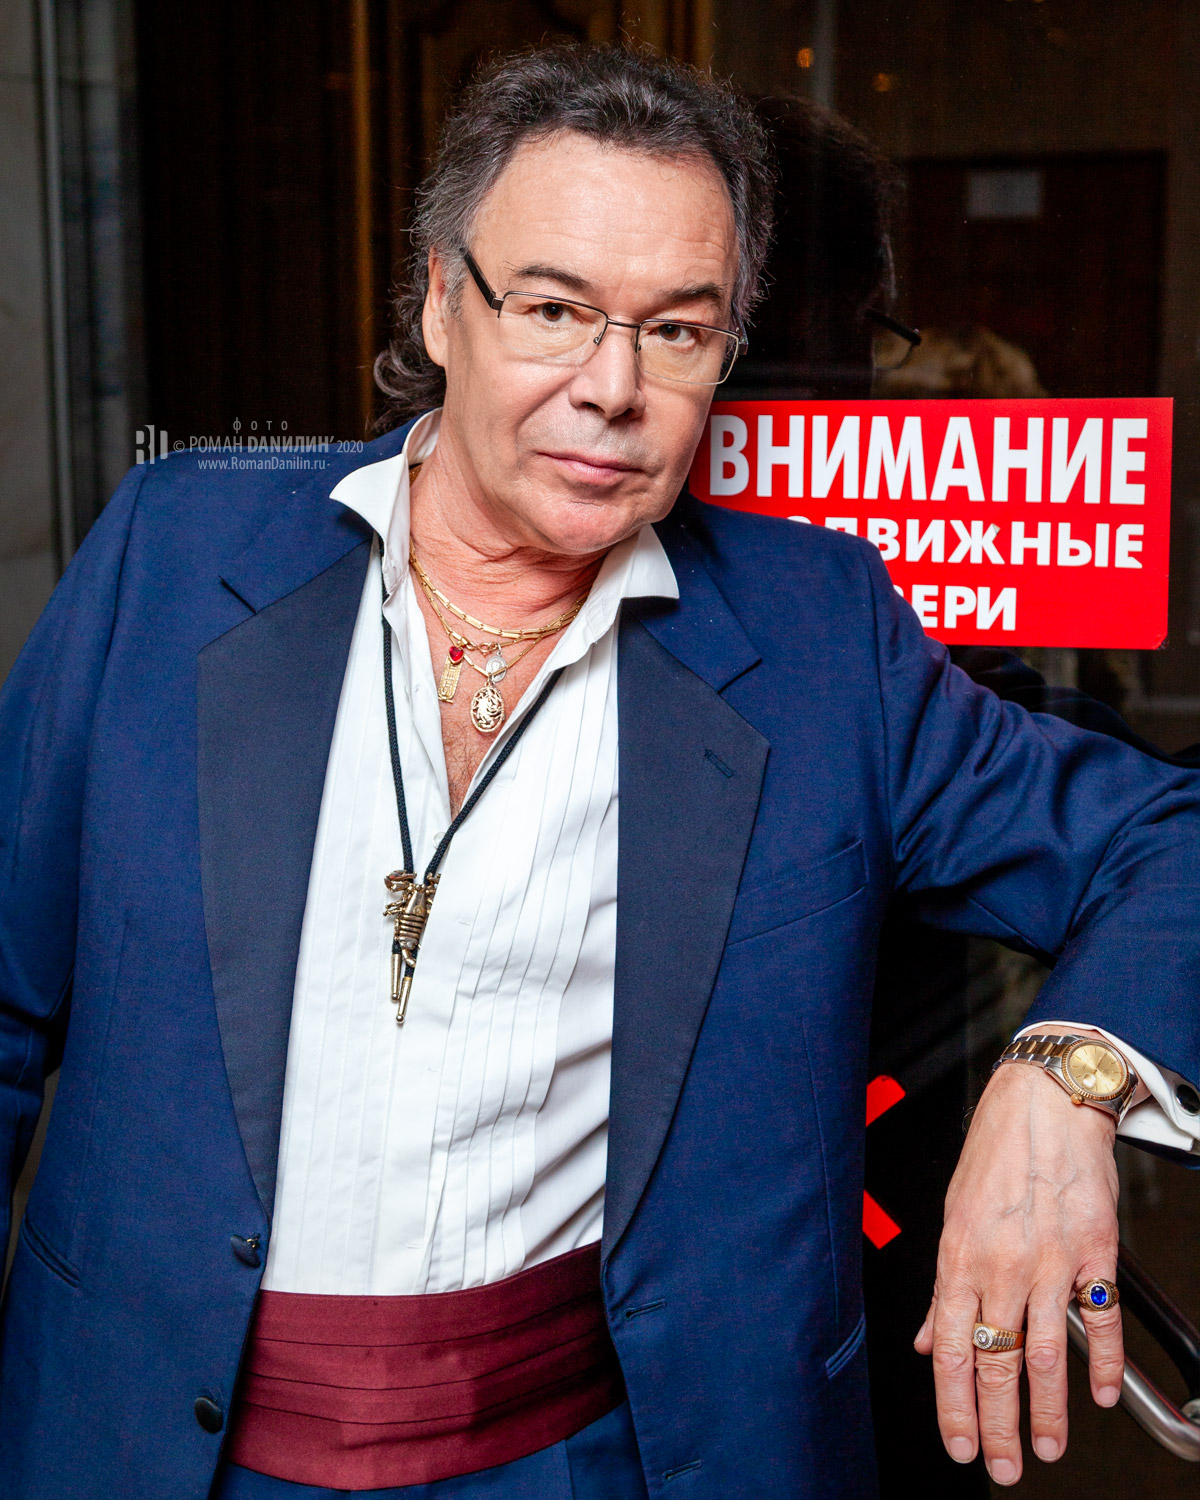 Михаил Муромов © фото Роман Данилин' 2020 / www.RomanDanilin.ru